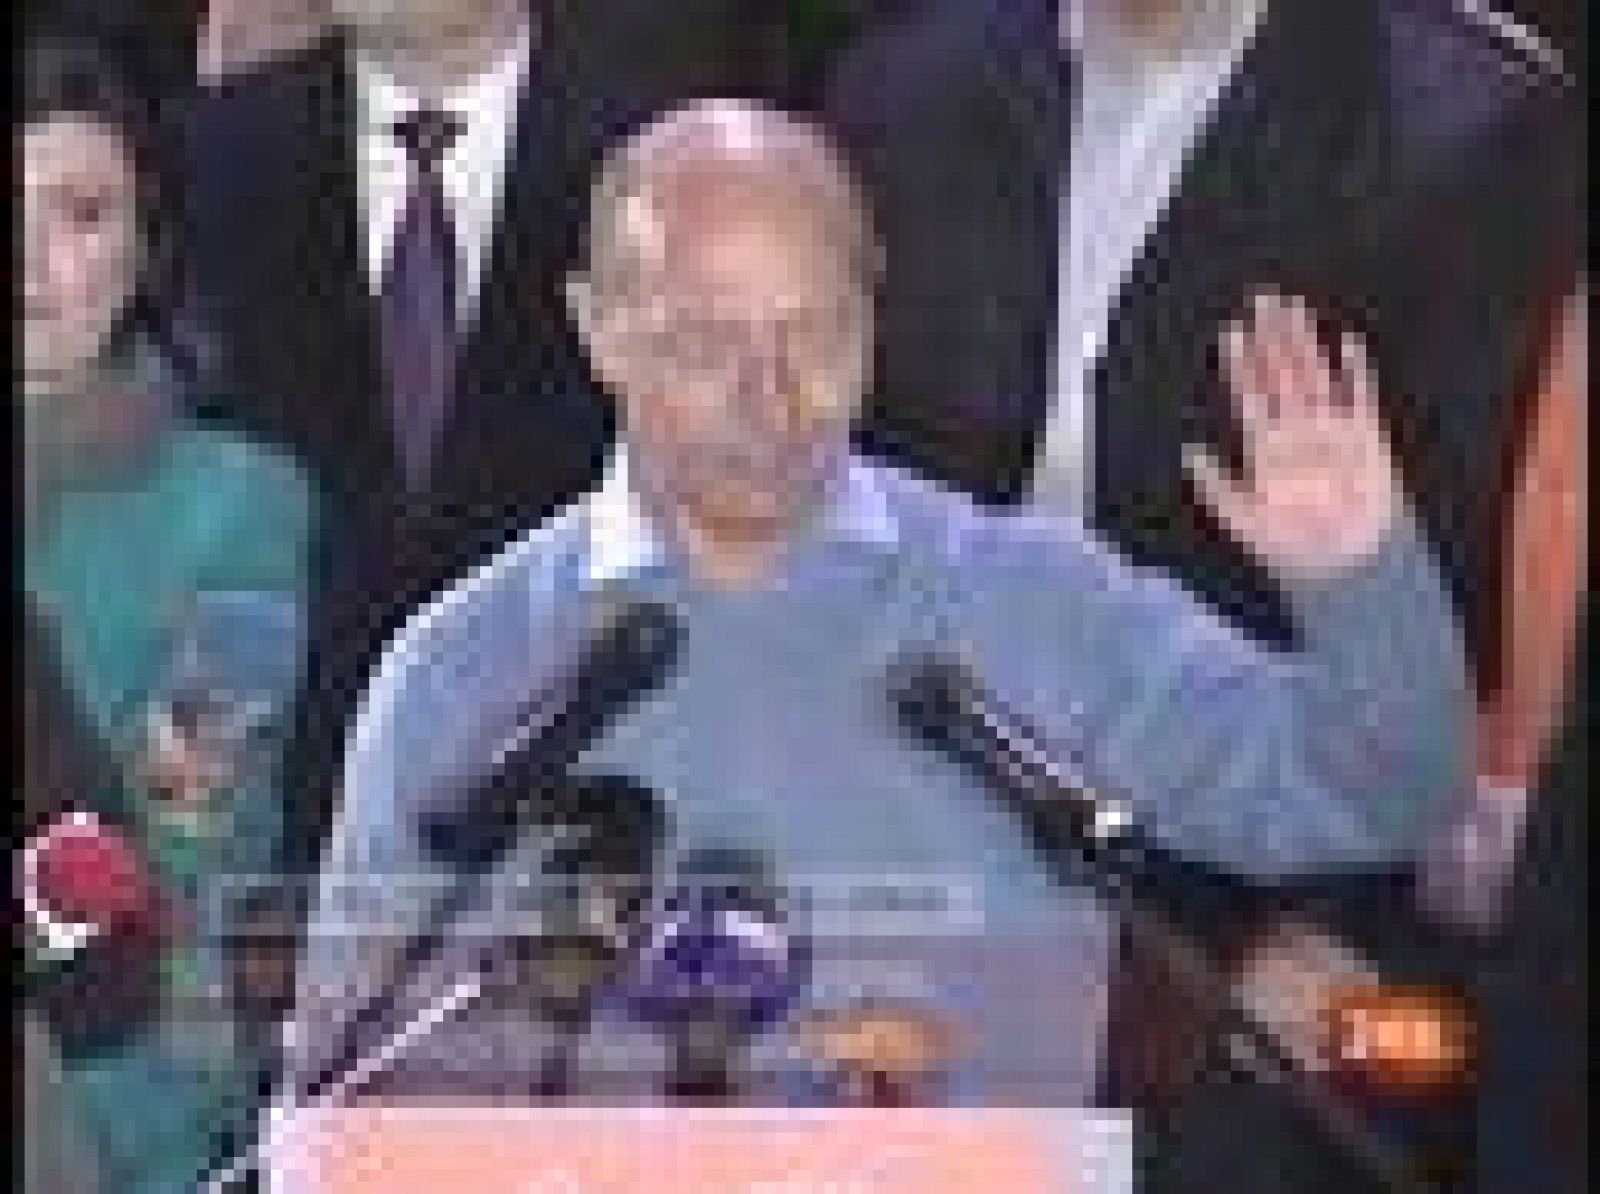 El candidato del Partido Social Demócrata (PSD), Mircea Geoana, ha conseguido entre el 51 y el 52% de los votos frente al actual jefe del Estado, Traian Basescu, en la segunda vuelta de las elecciones presidenciales rumanas, según los primeros sondeos a pie de urna (06/12/09).